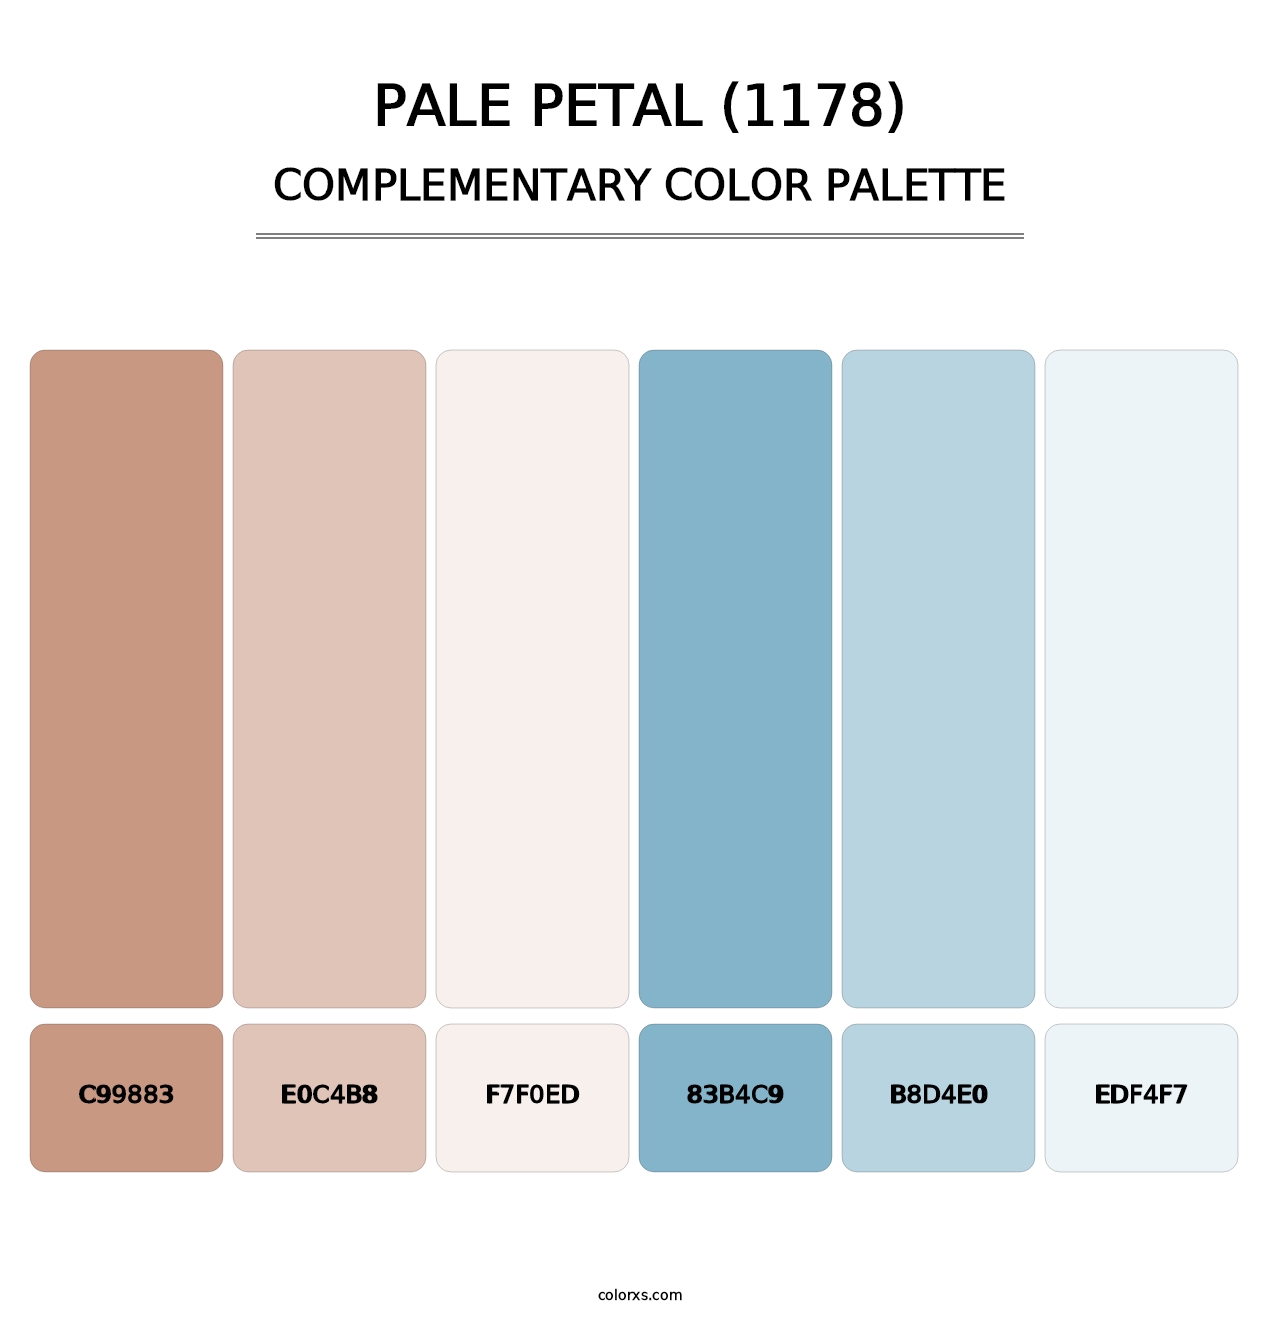 Pale Petal (1178) - Complementary Color Palette